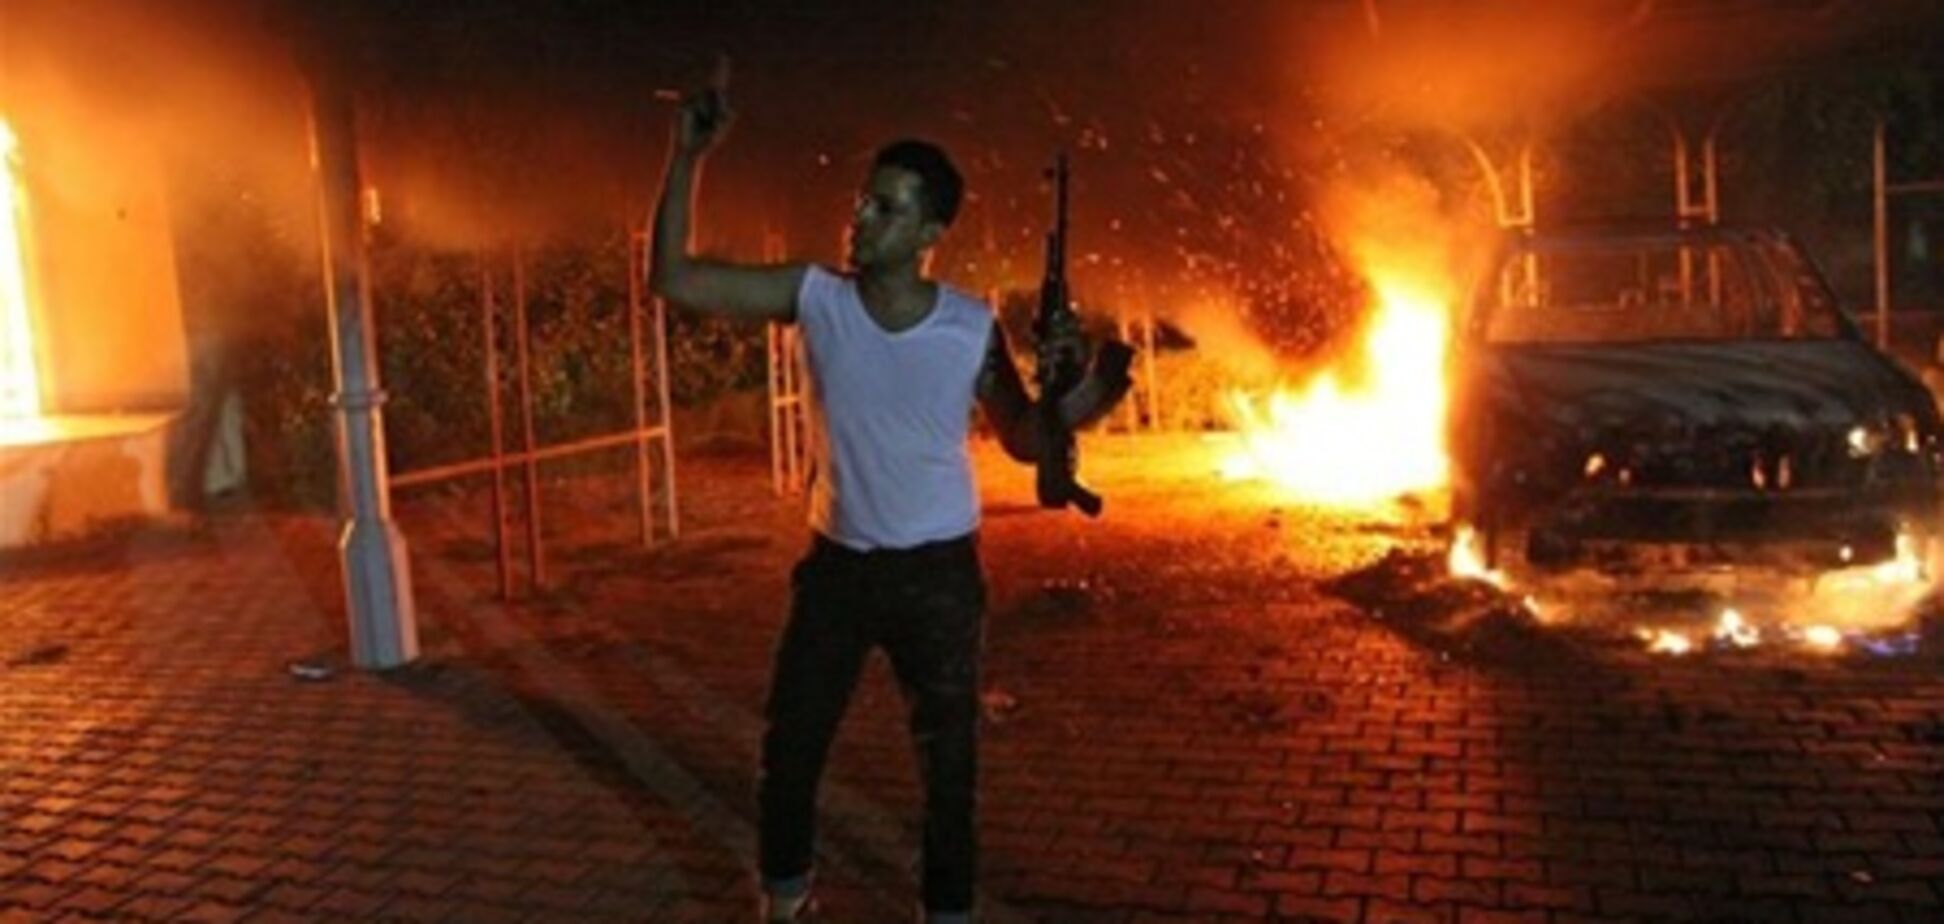 Пентагон: к атаке на дипмиссию США в Ливии причастна 'Аль-Каида'